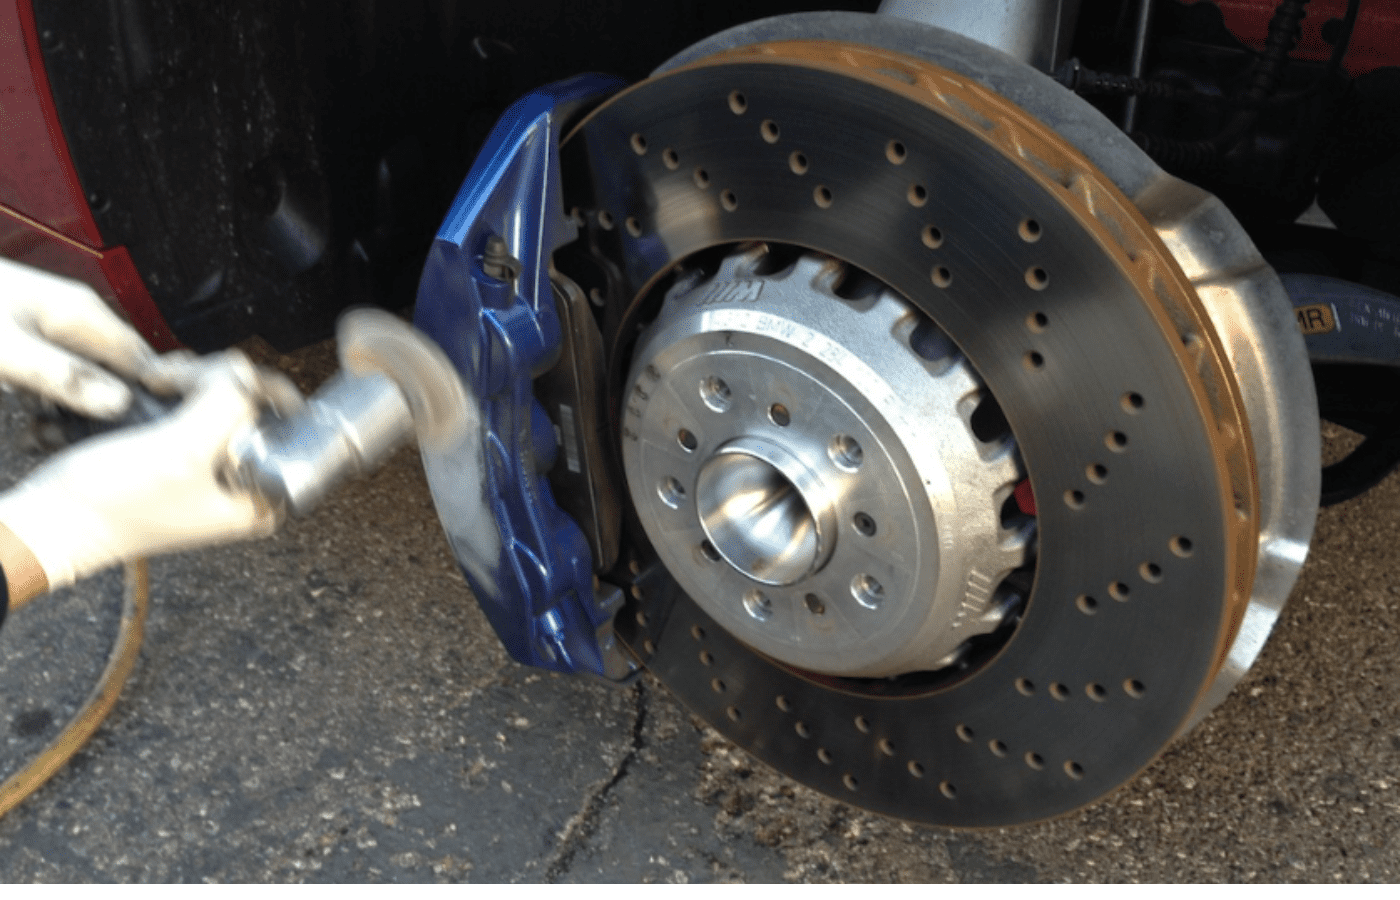 does brake fluid affect powder coating